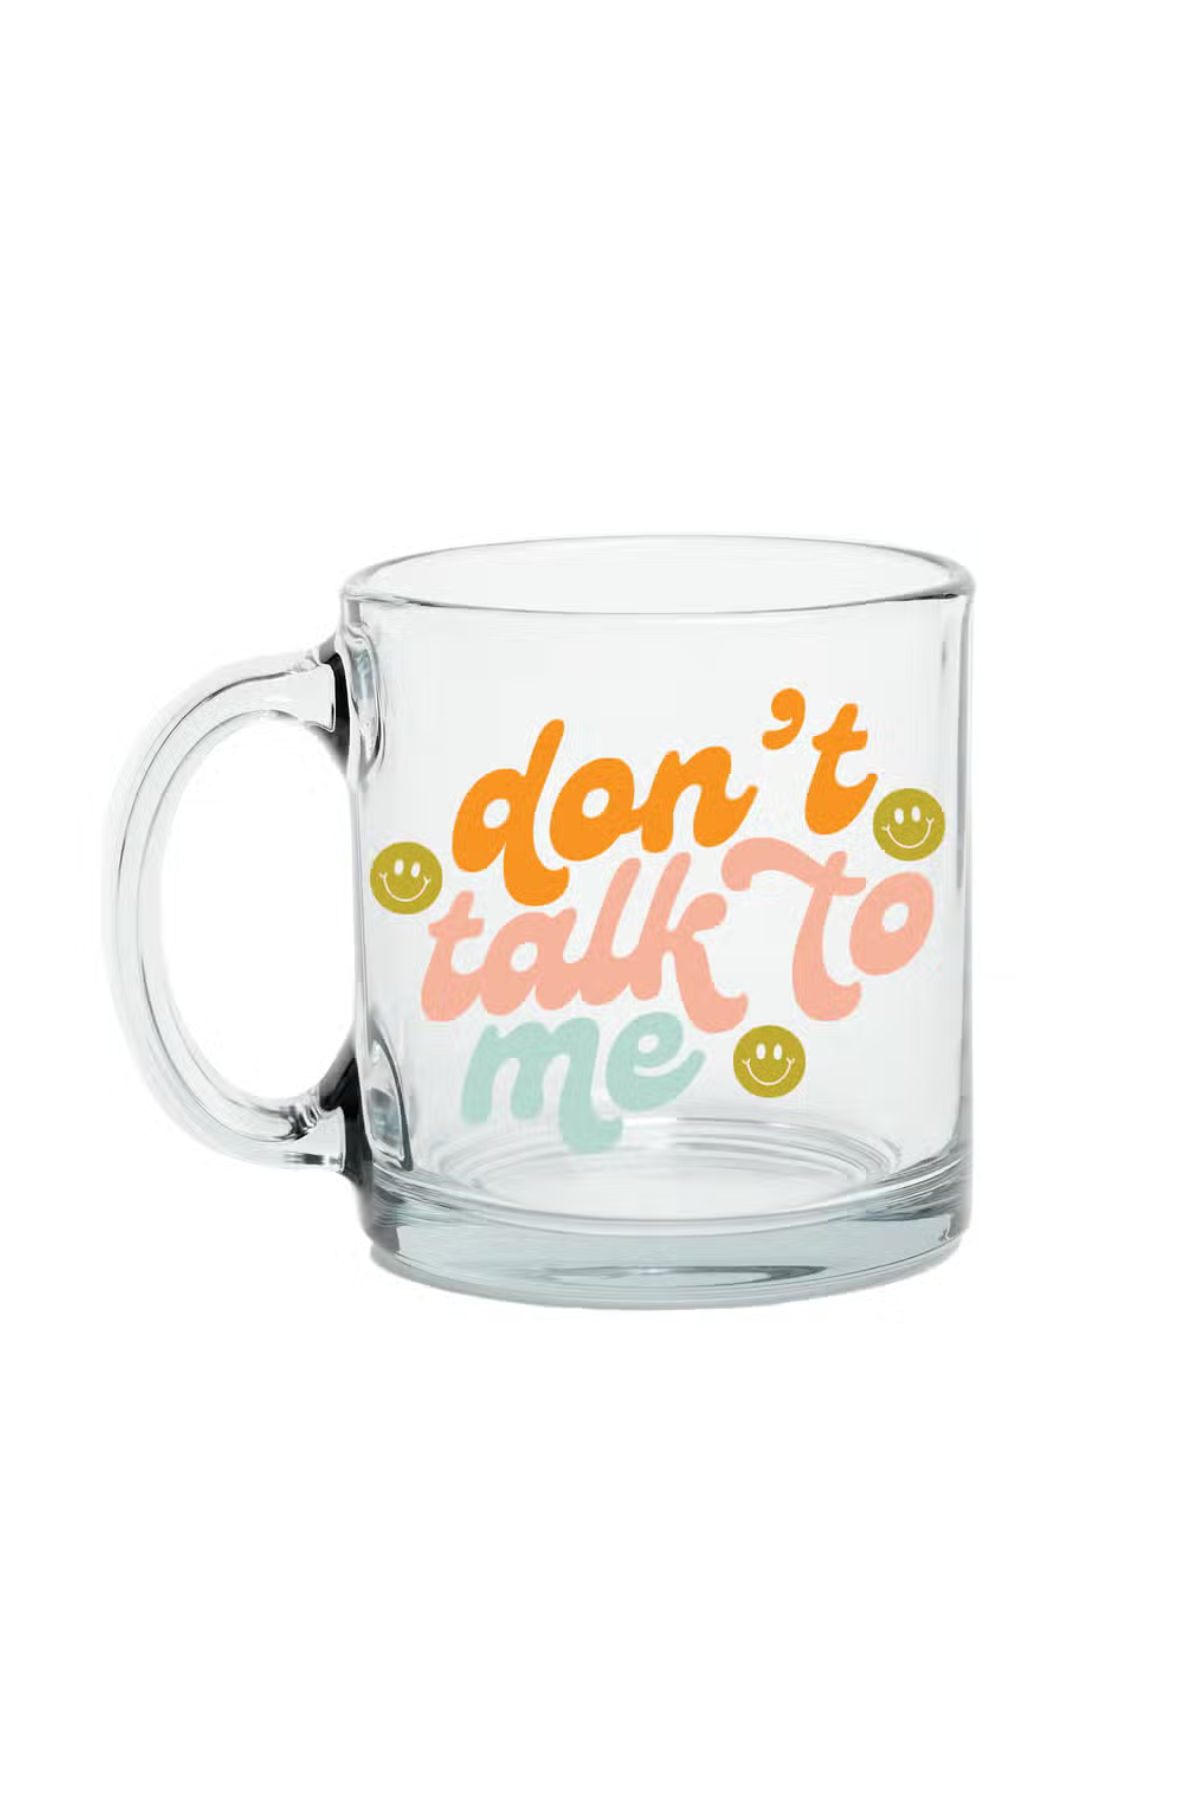 Don't Talk To Me Mug